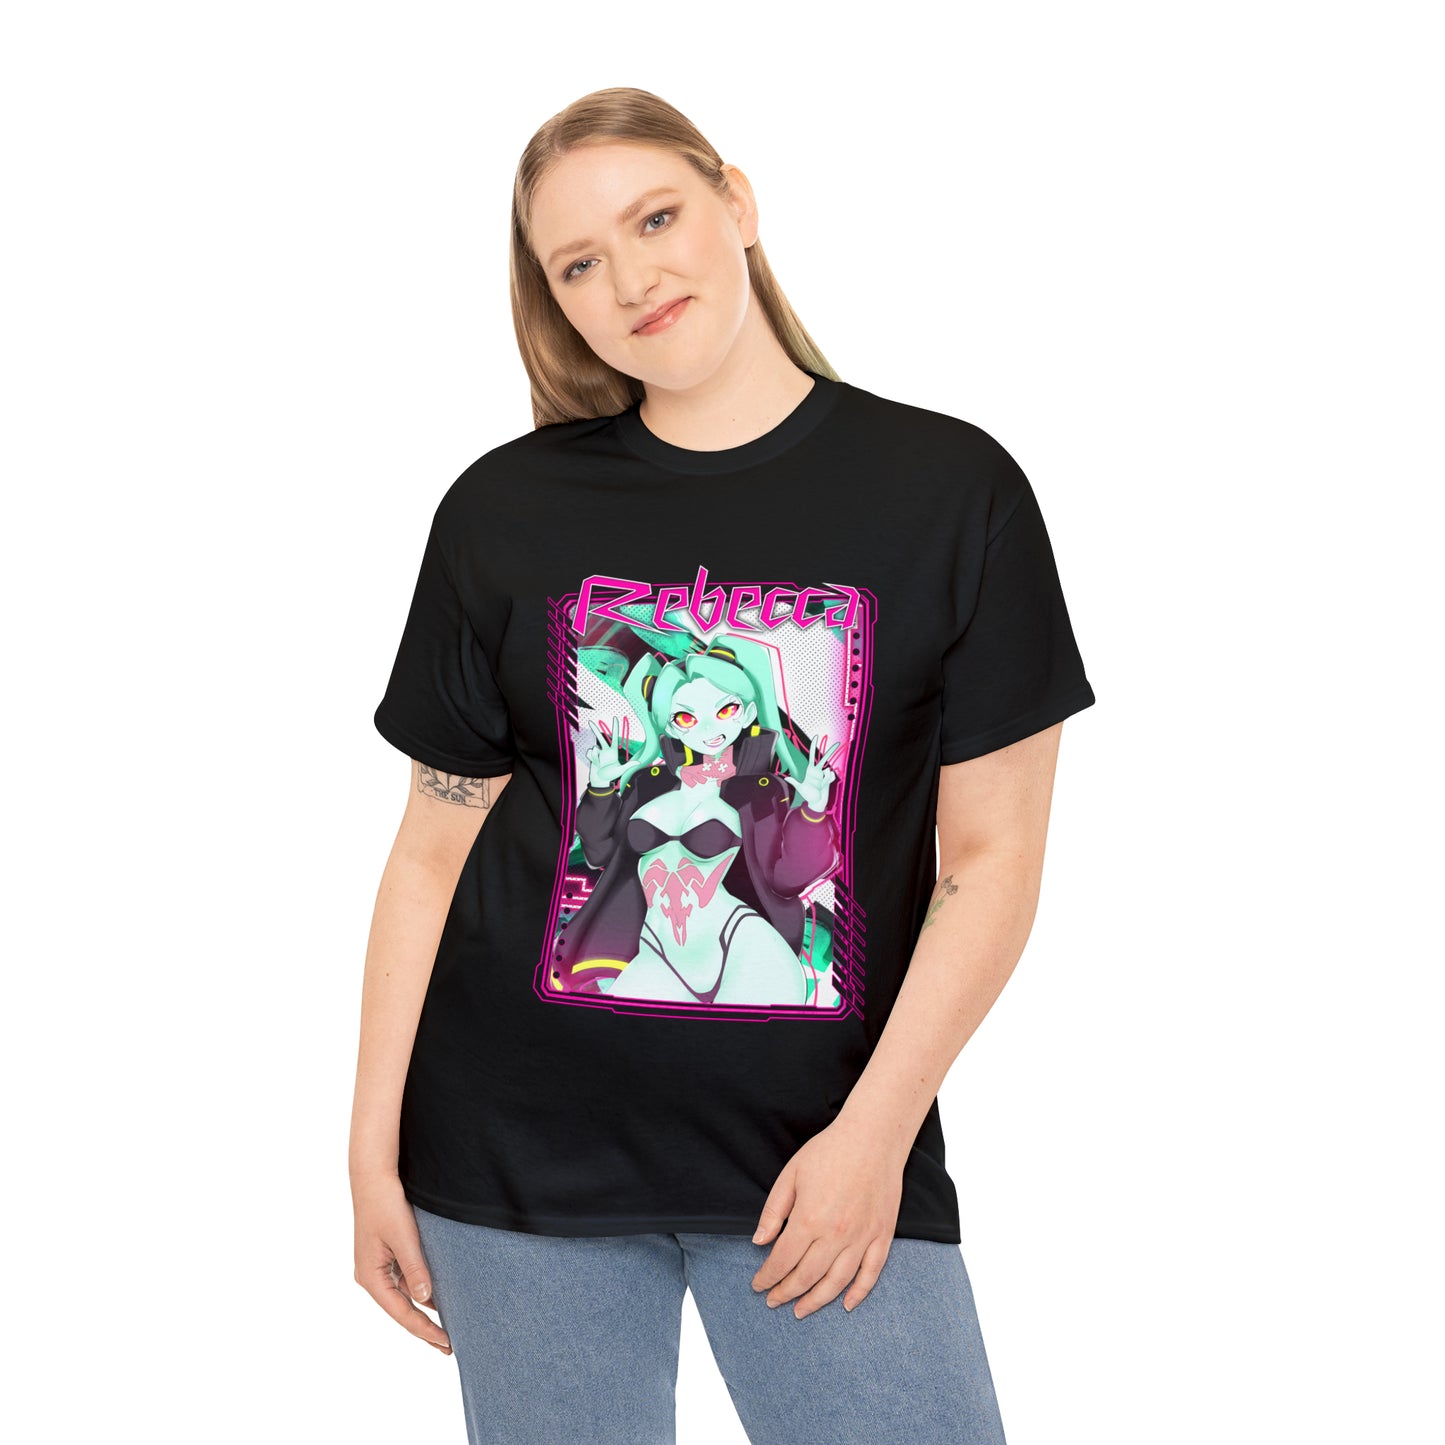 Rebecca Cyberpunk T-Shirt